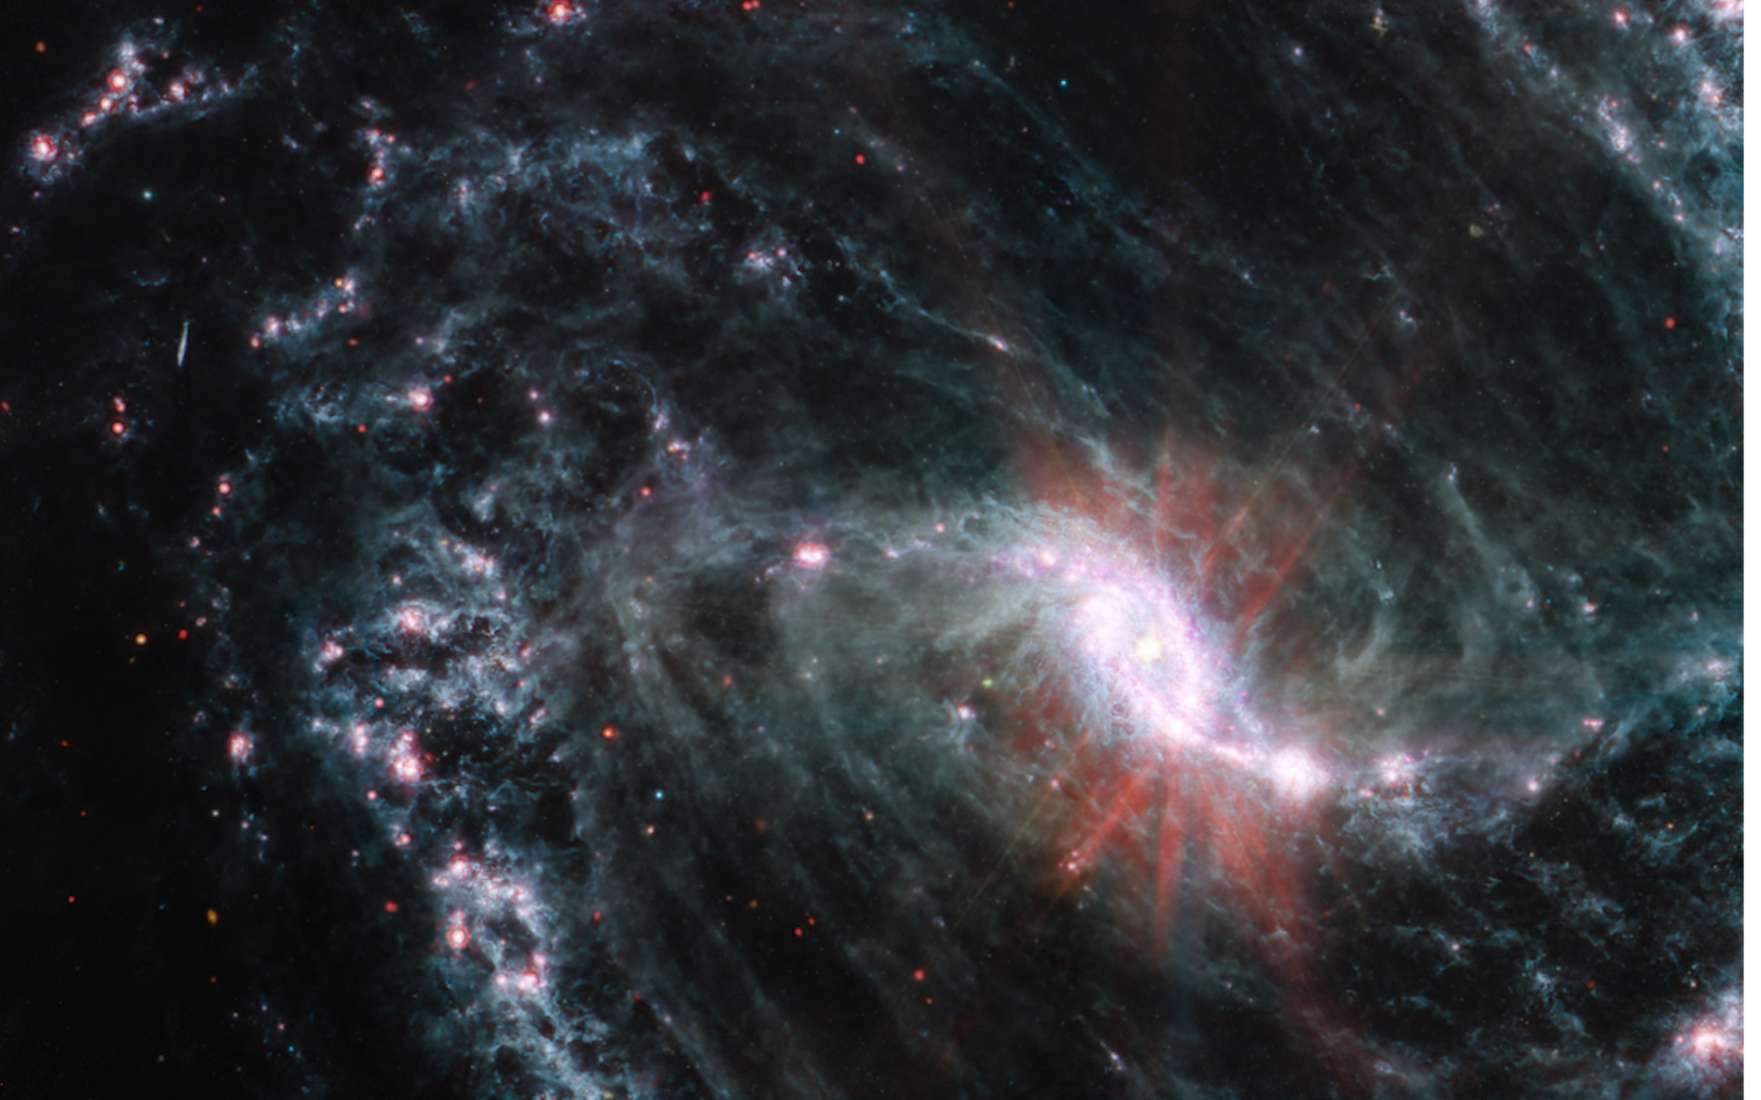 Le télescope James-Webb nous fait rêver avec ces images qui dissèquent des galaxies spirales proches